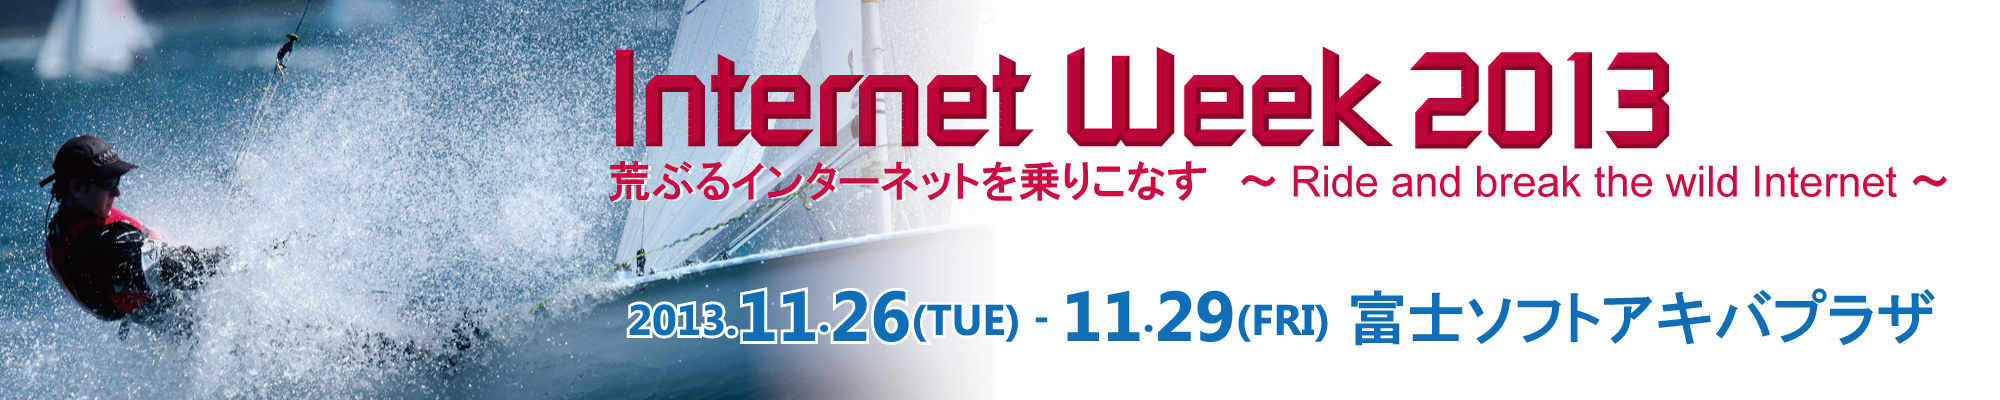 バナー:Internet Week 2013